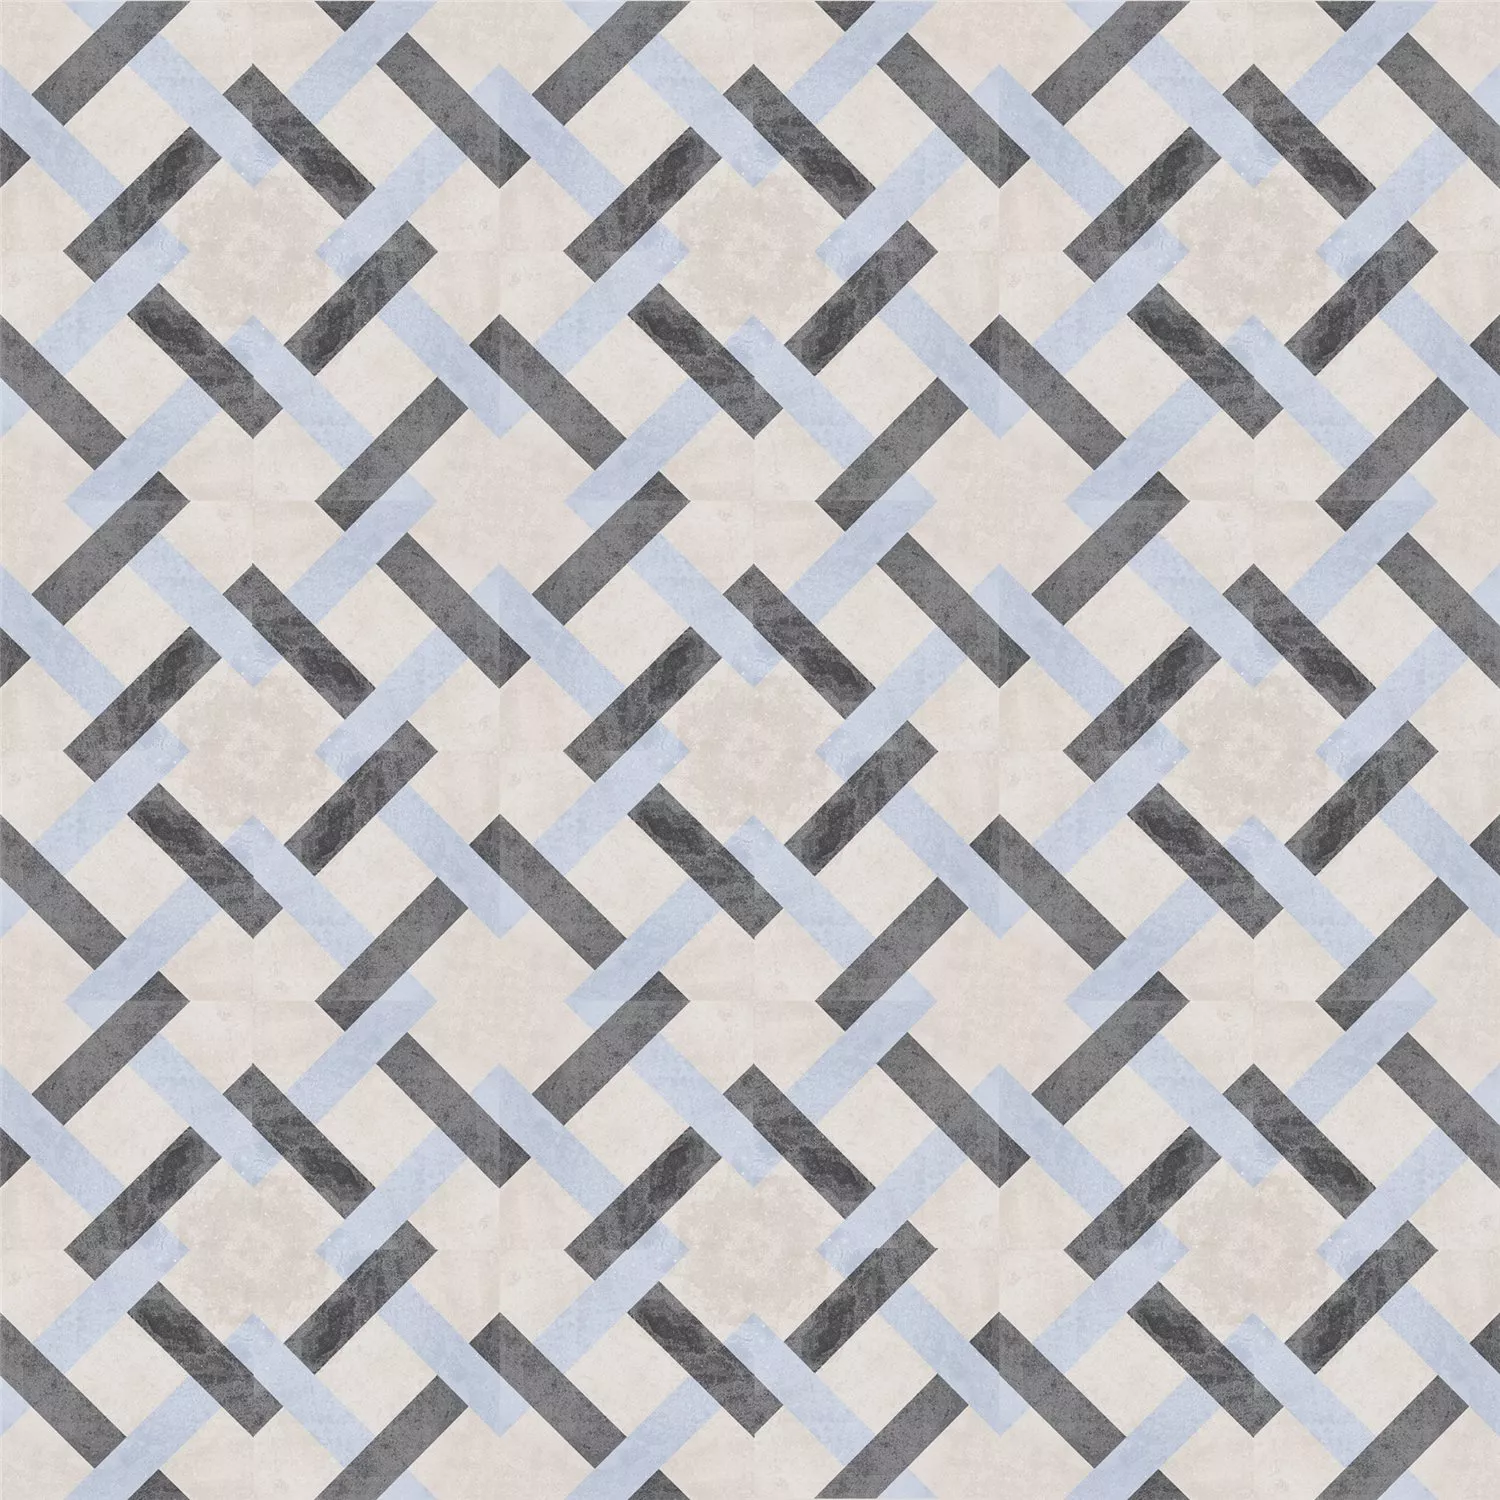 Cement Tiles Retro Optic Gris Floor Tiles Pablo 18,6x18,6cm